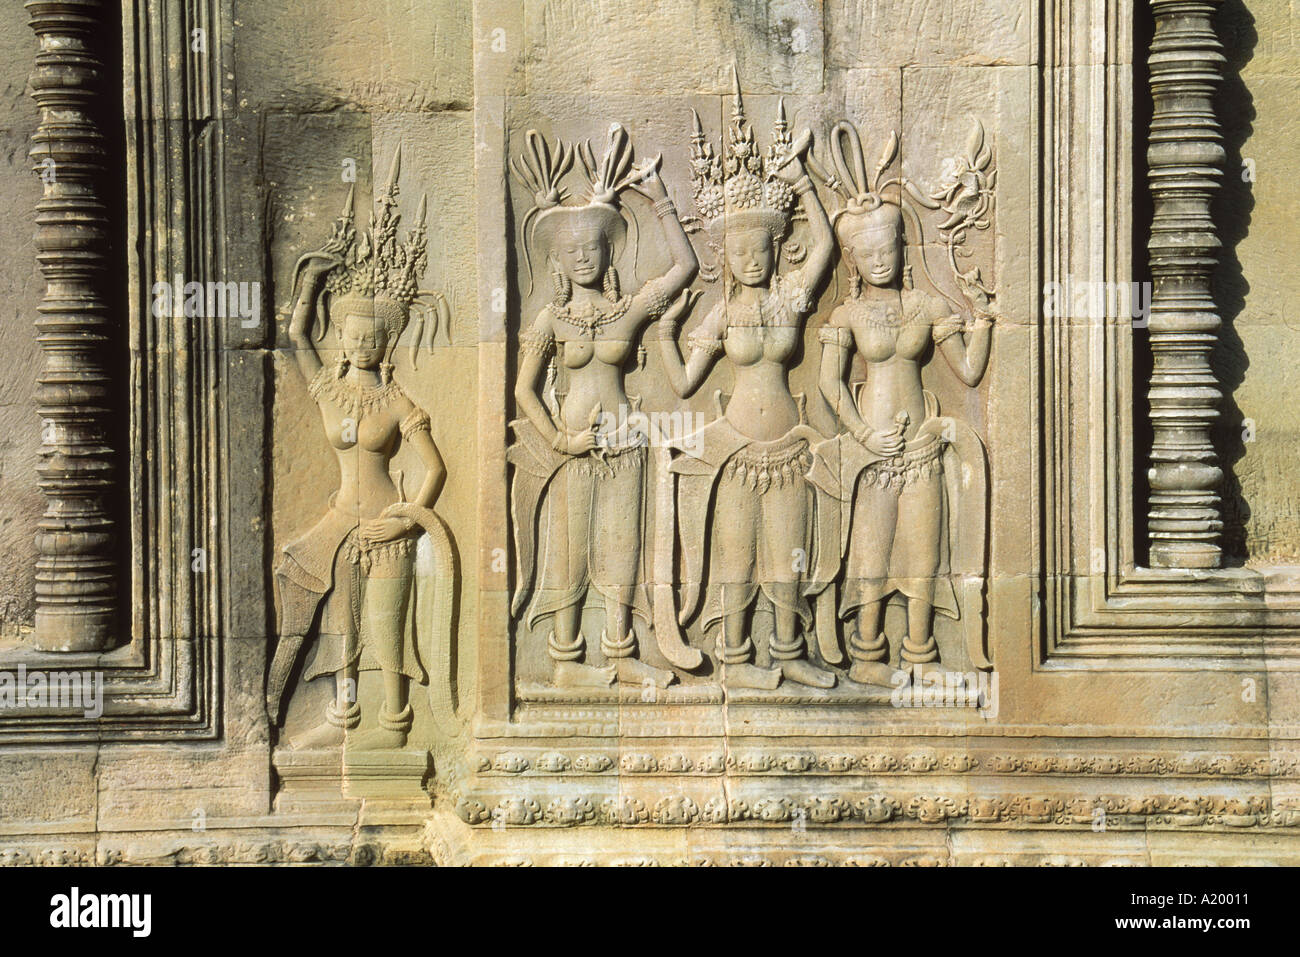 Stein-Flachreliefs, die Szenen des ländlichen Lebens und historische Ereignisse an den Wänden des Angkor Wat Siem Reap Kambodscha Asien G Stockfoto